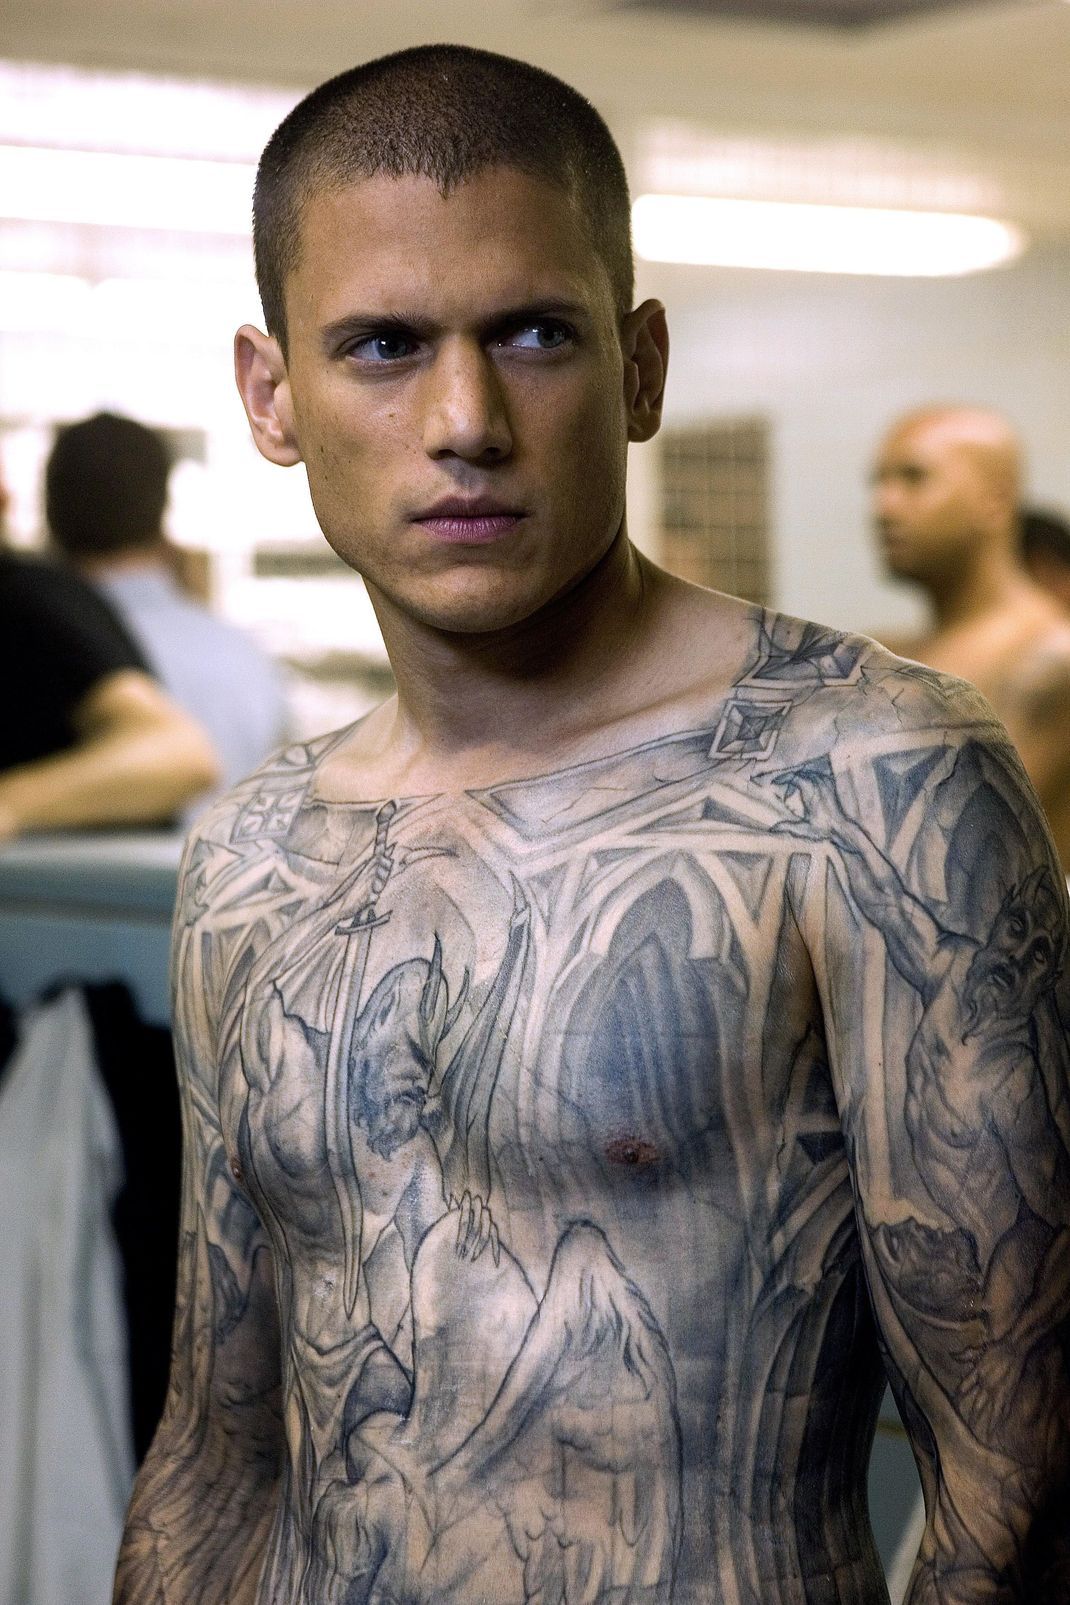 Wentworth Miller als Michael Scofield in "Prison Break" mit seinem legendären Fluchtplan-Tattoo, das in der Serie eine zentrale Rolle spielt: Es ist eine Karte des Gefängnisses.